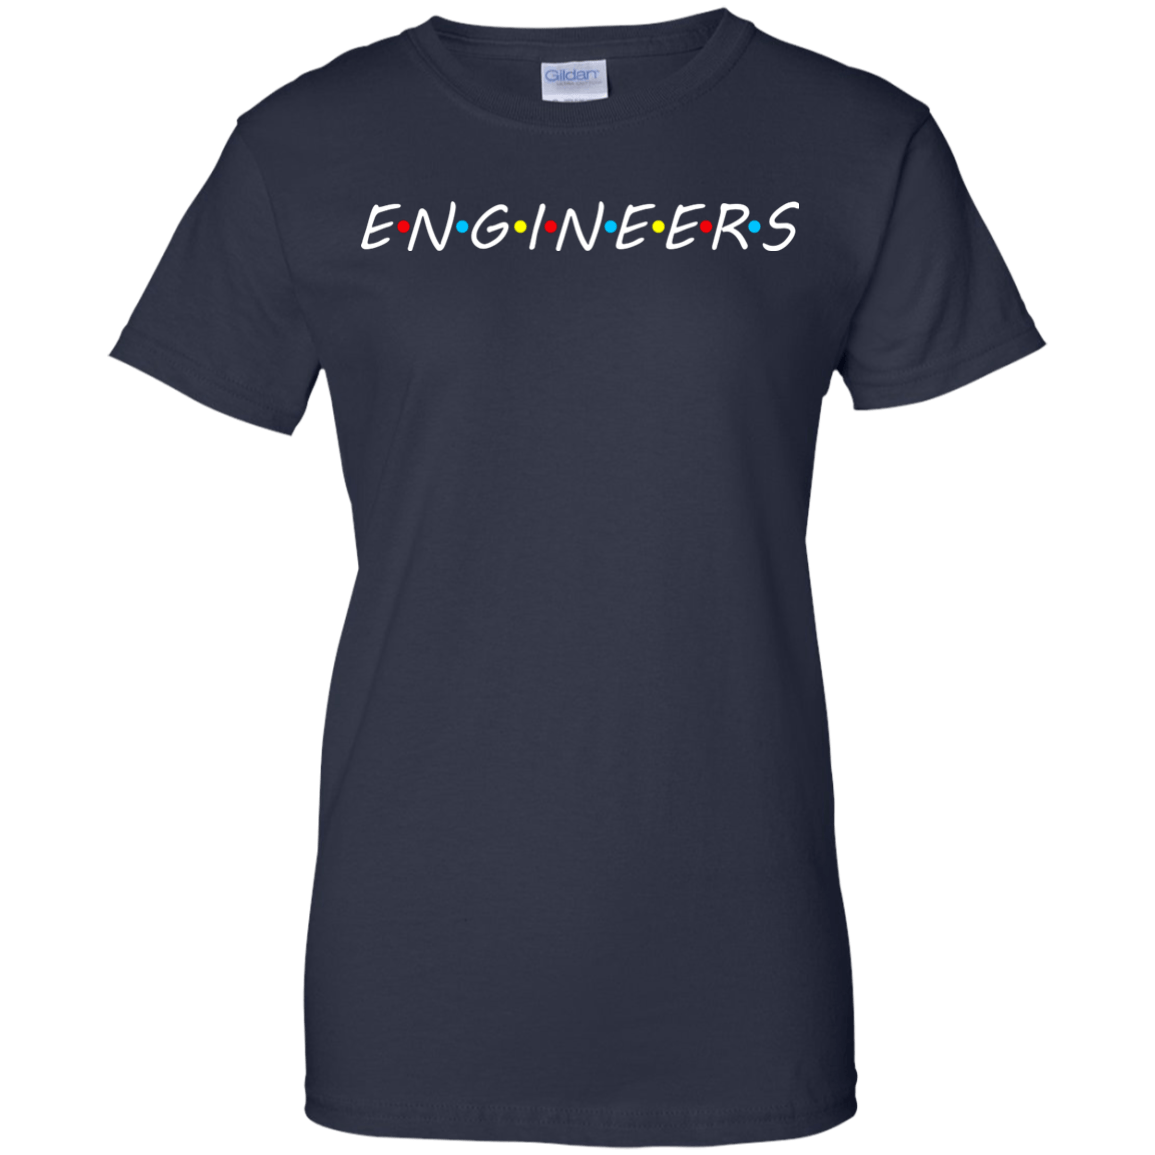 Engineers (Friends)